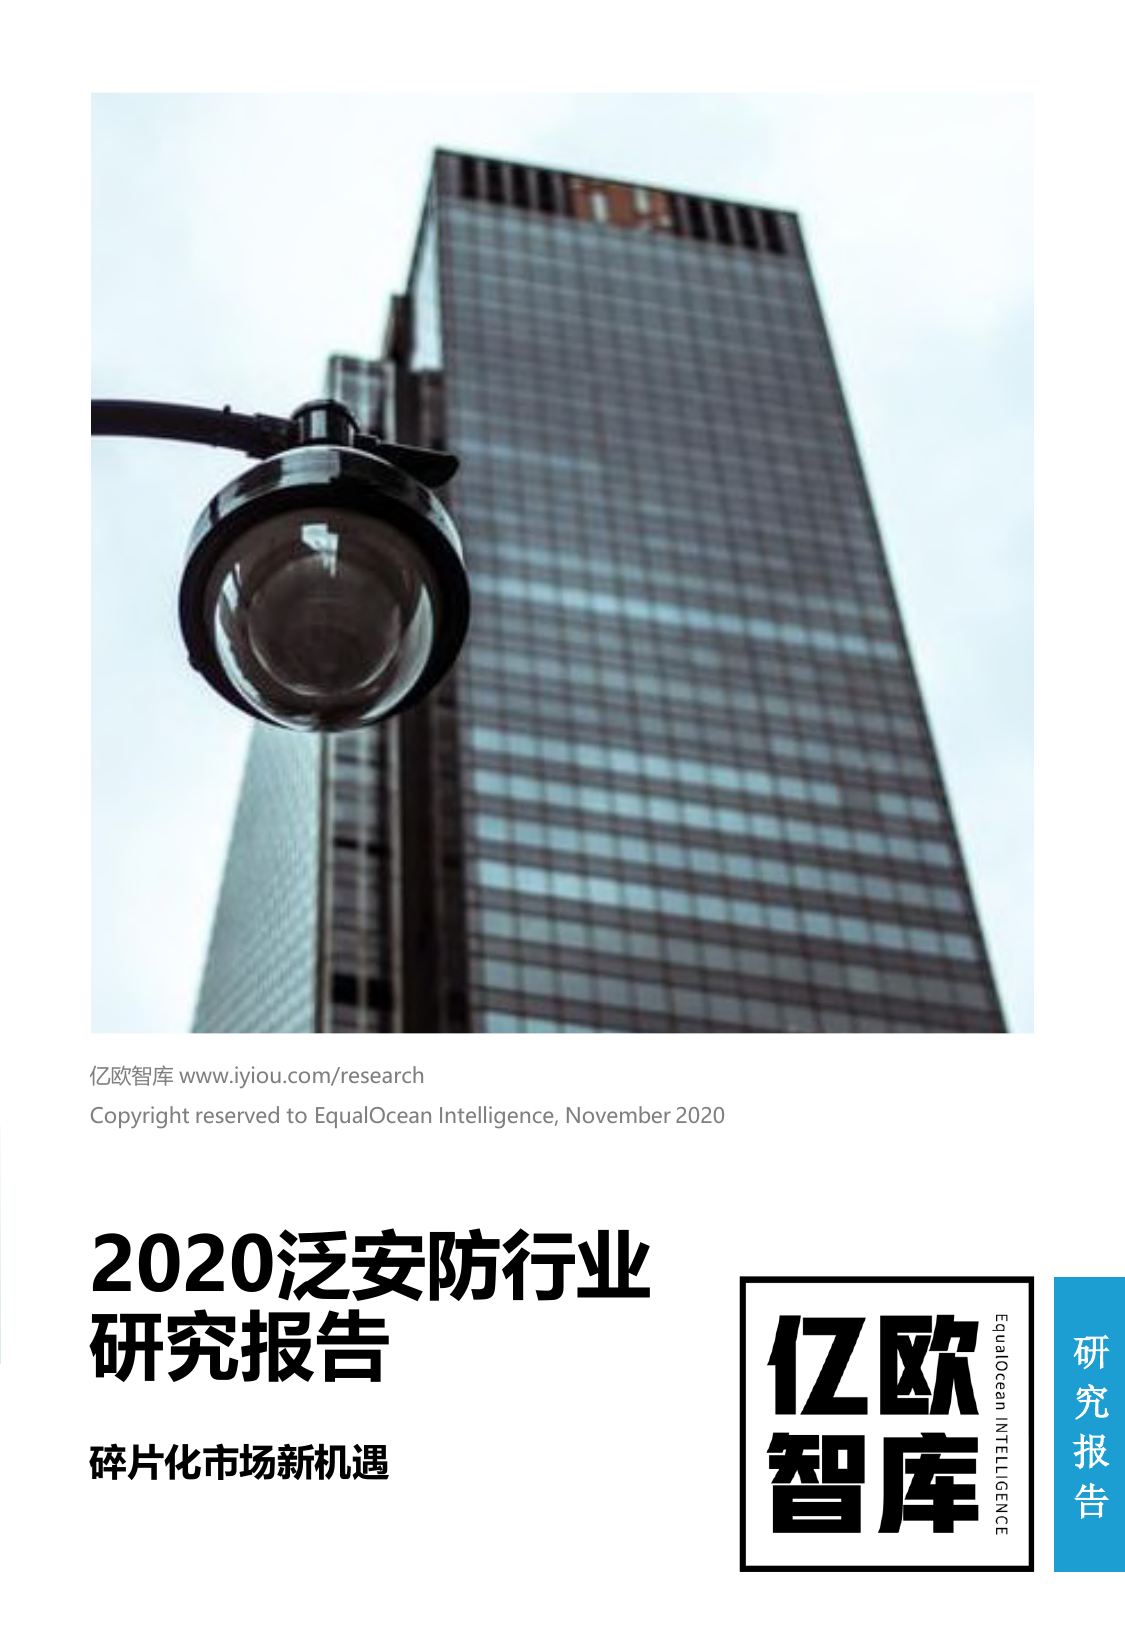 2020泛安防行业研究报告-亿欧智库